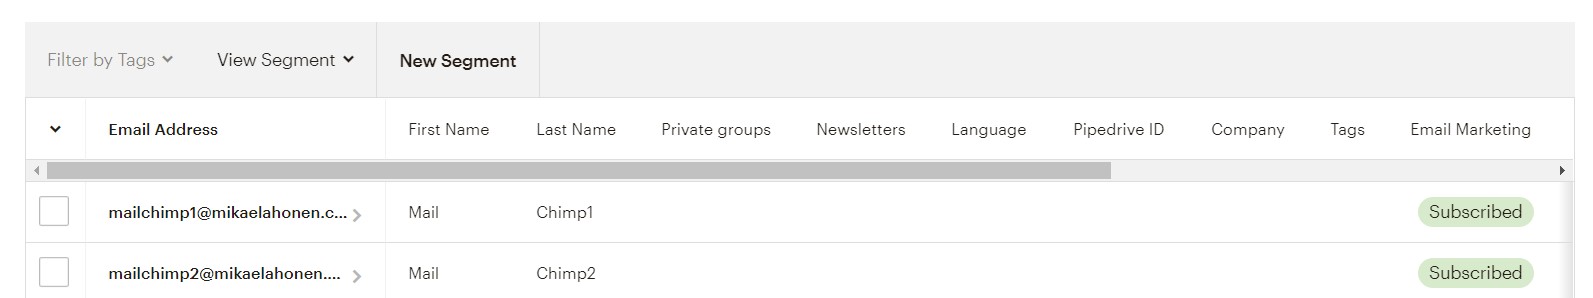 Pipedrivesta viedyt yhteyshenkilöt näkyvät Mailchimpin sähköpostilistassa.